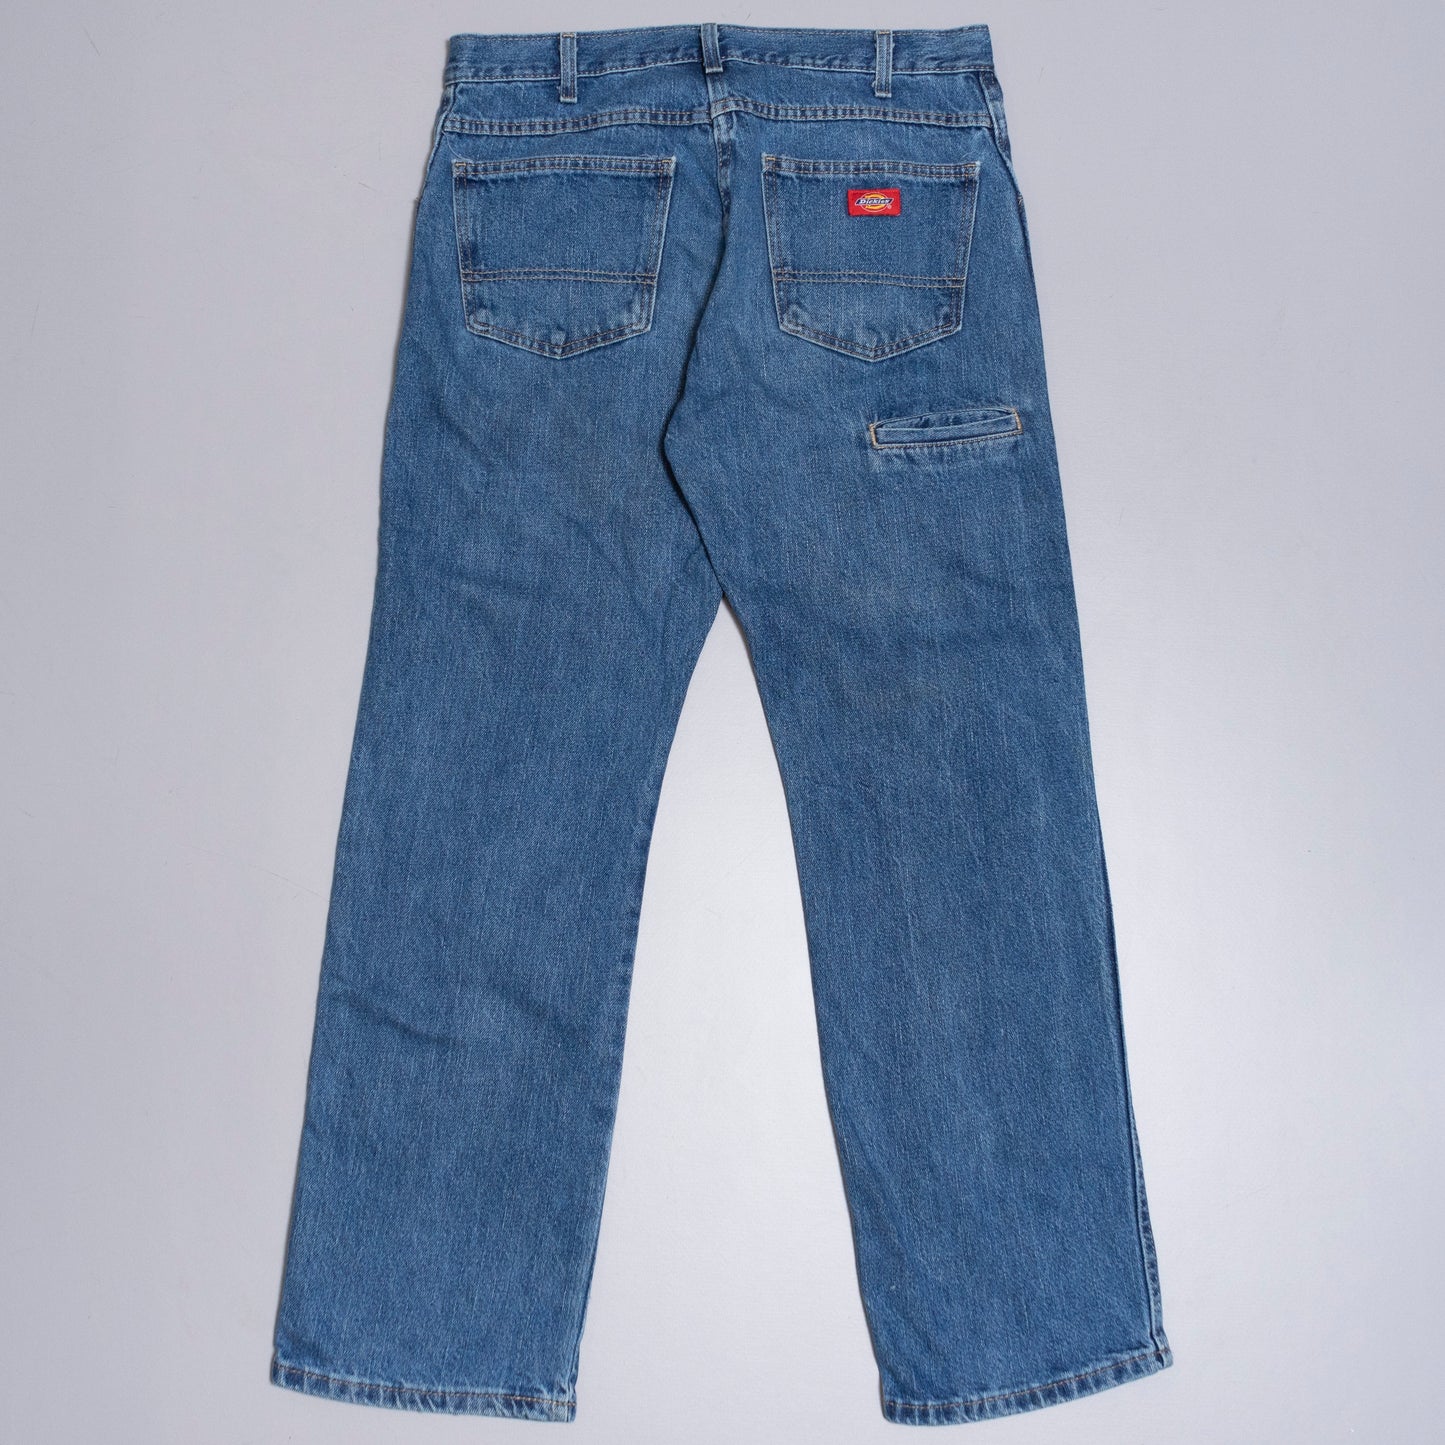 Dickies Jeans, 32/30